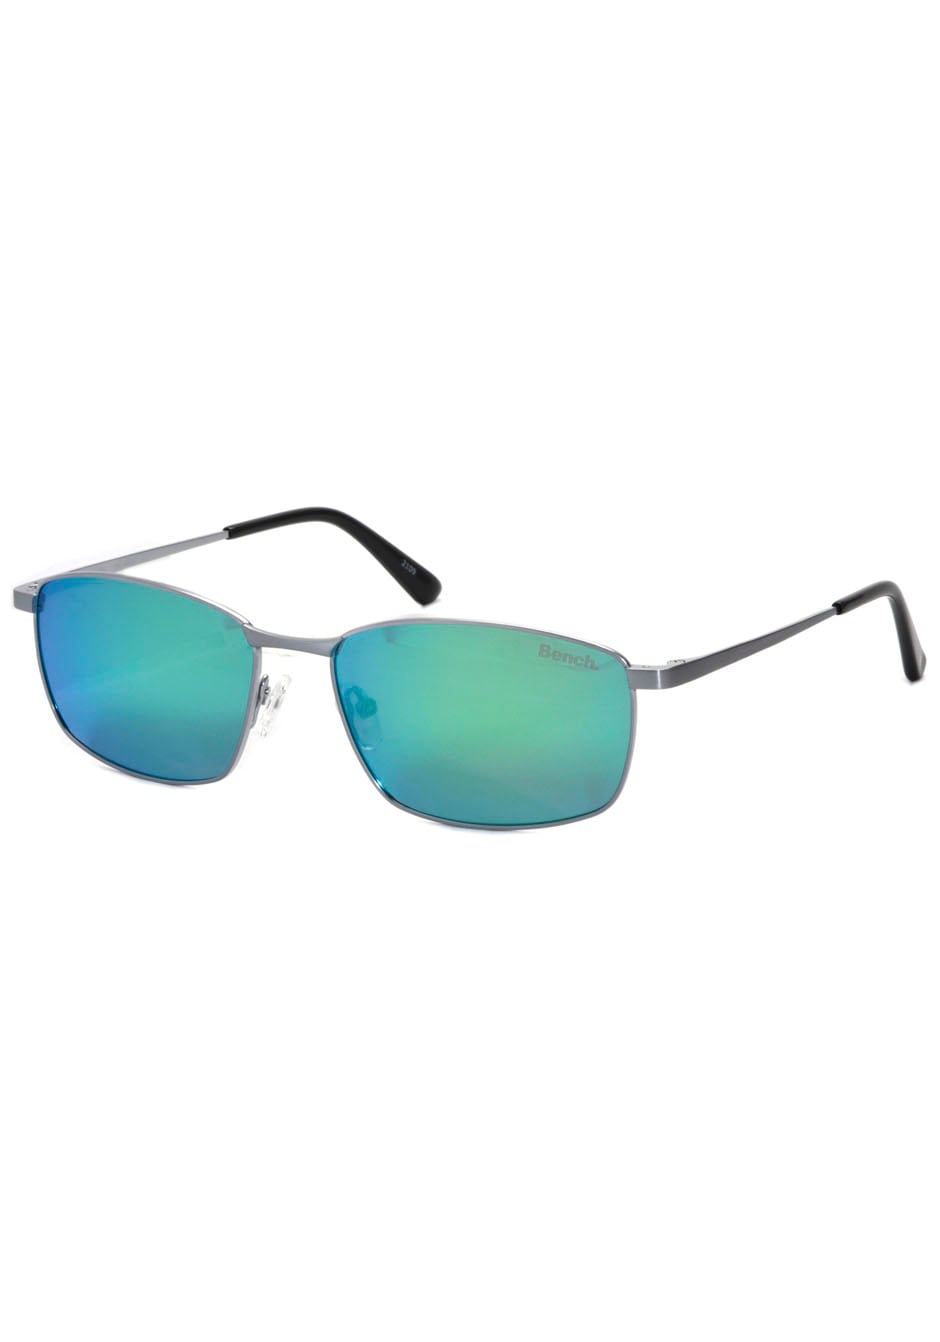 Bench. Sonnenbrille, ultraleicht für Ansprüche | Jelmoli-Versand höchste online an Material-Qualität bestellen